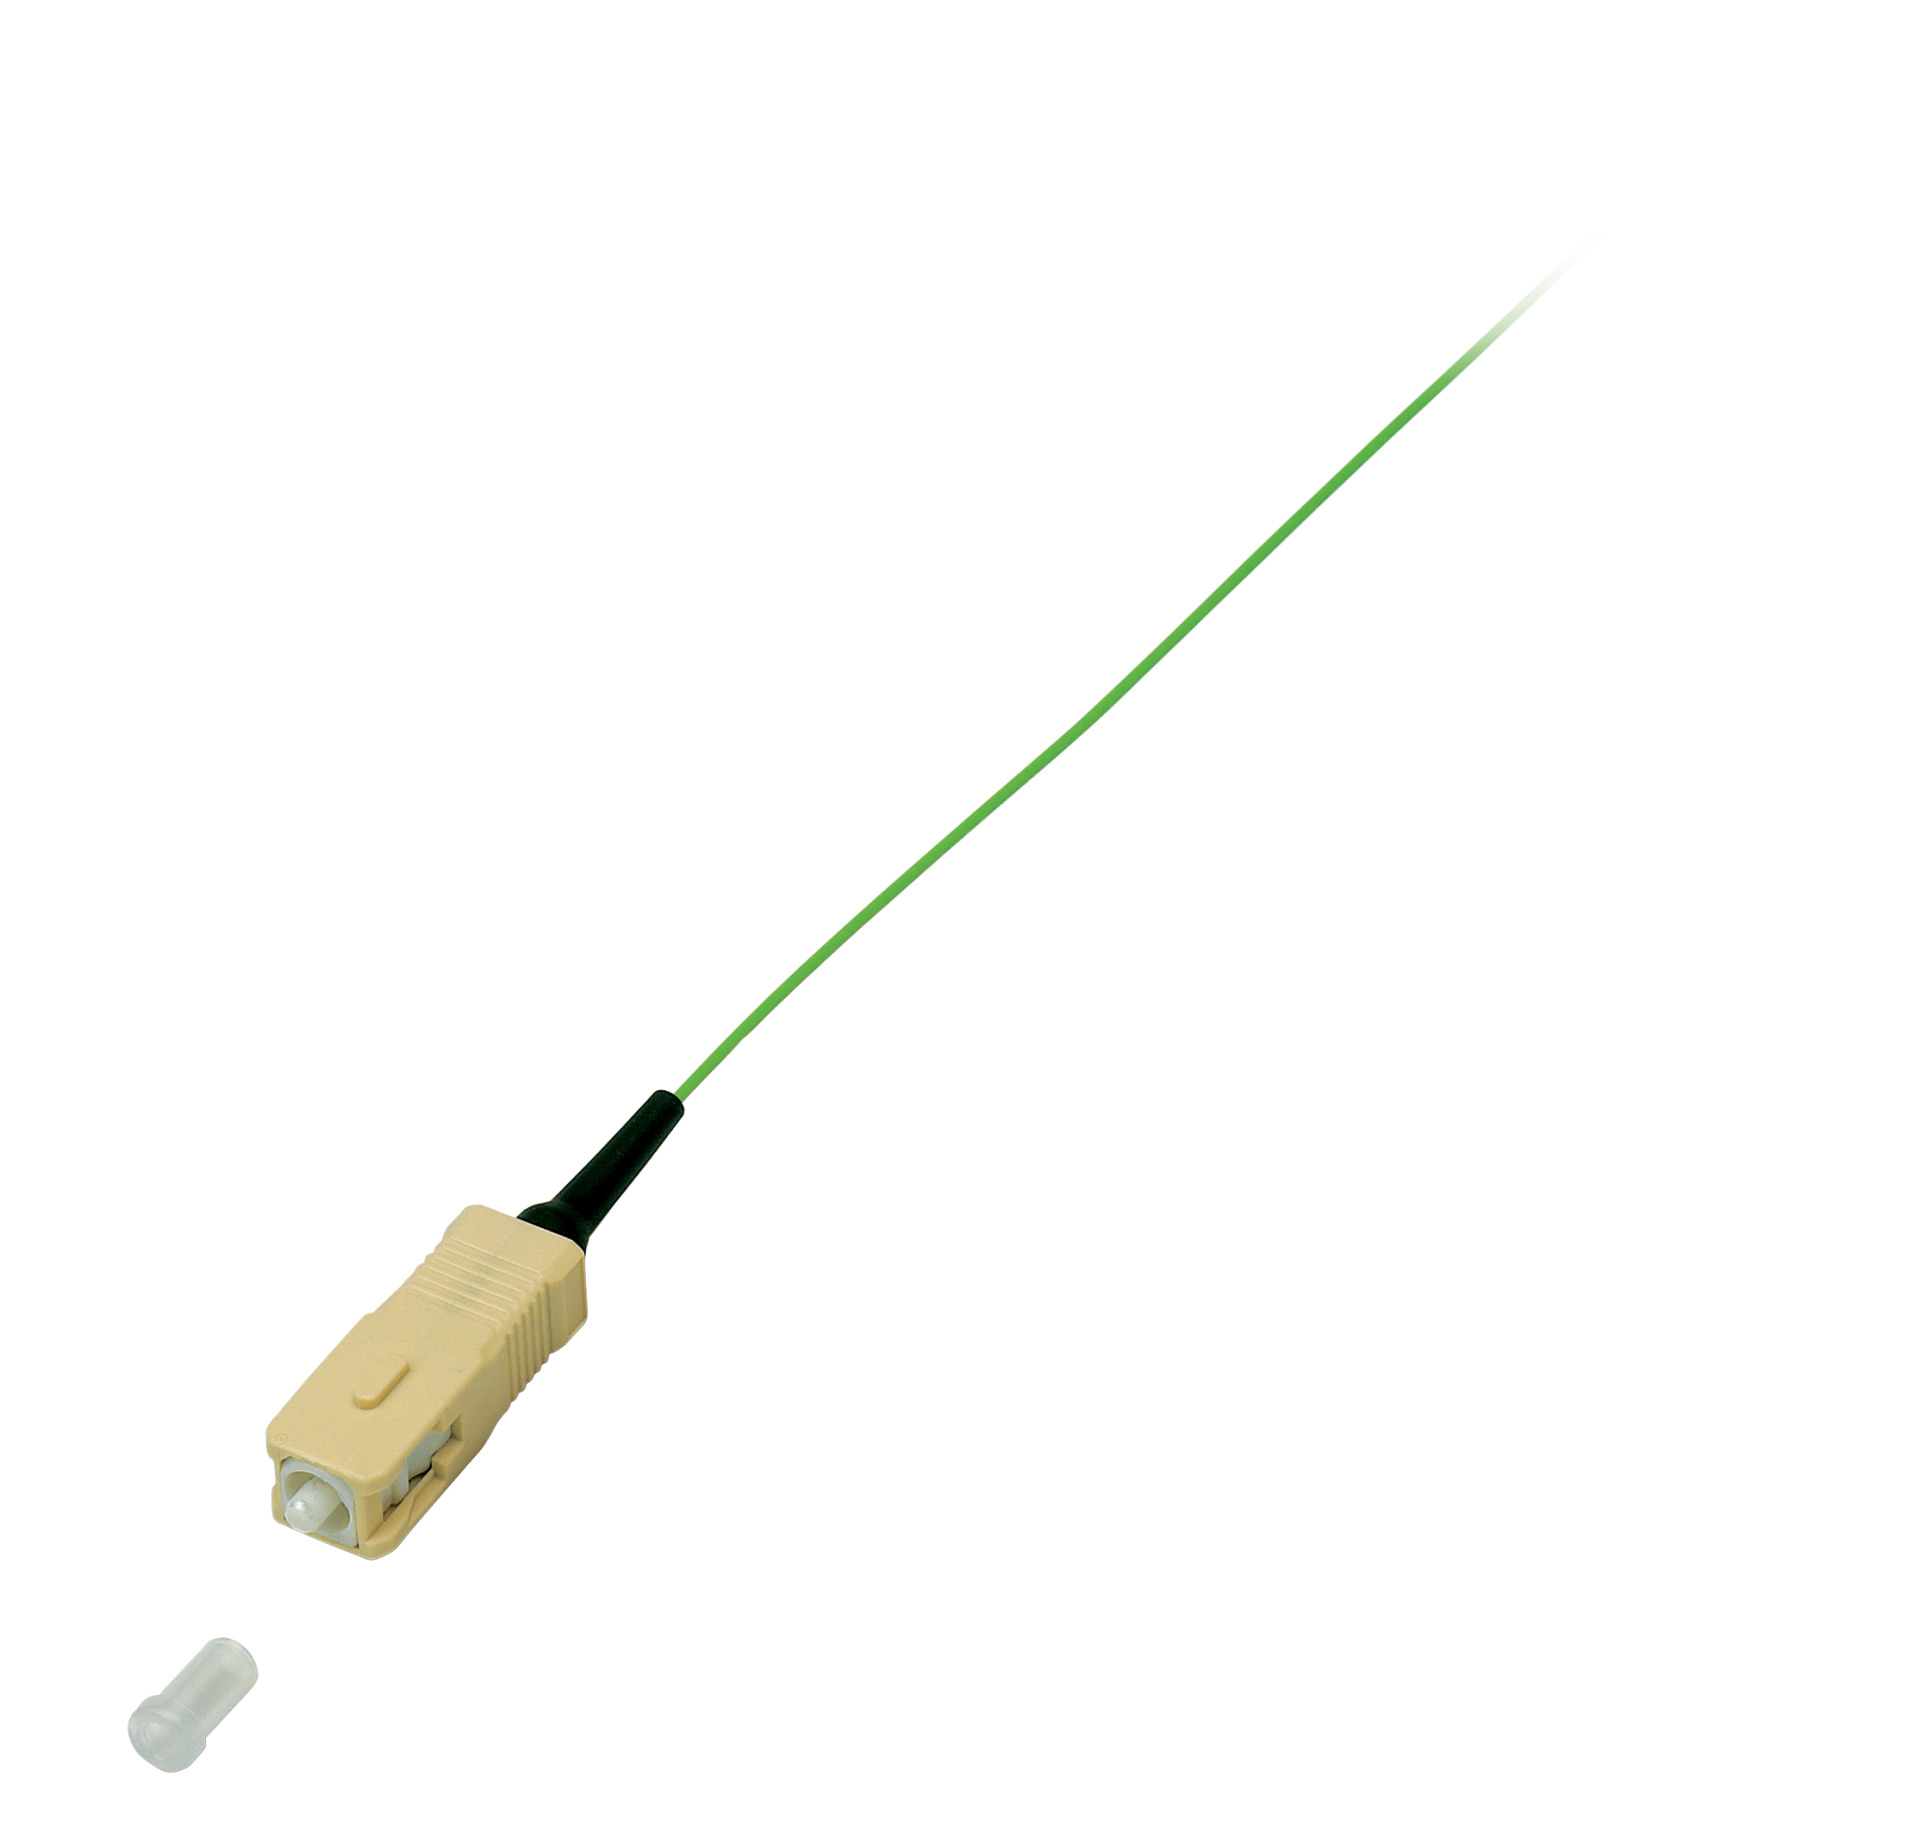 Faserpigtail SC 50/125µ, OM2, grün, 2m